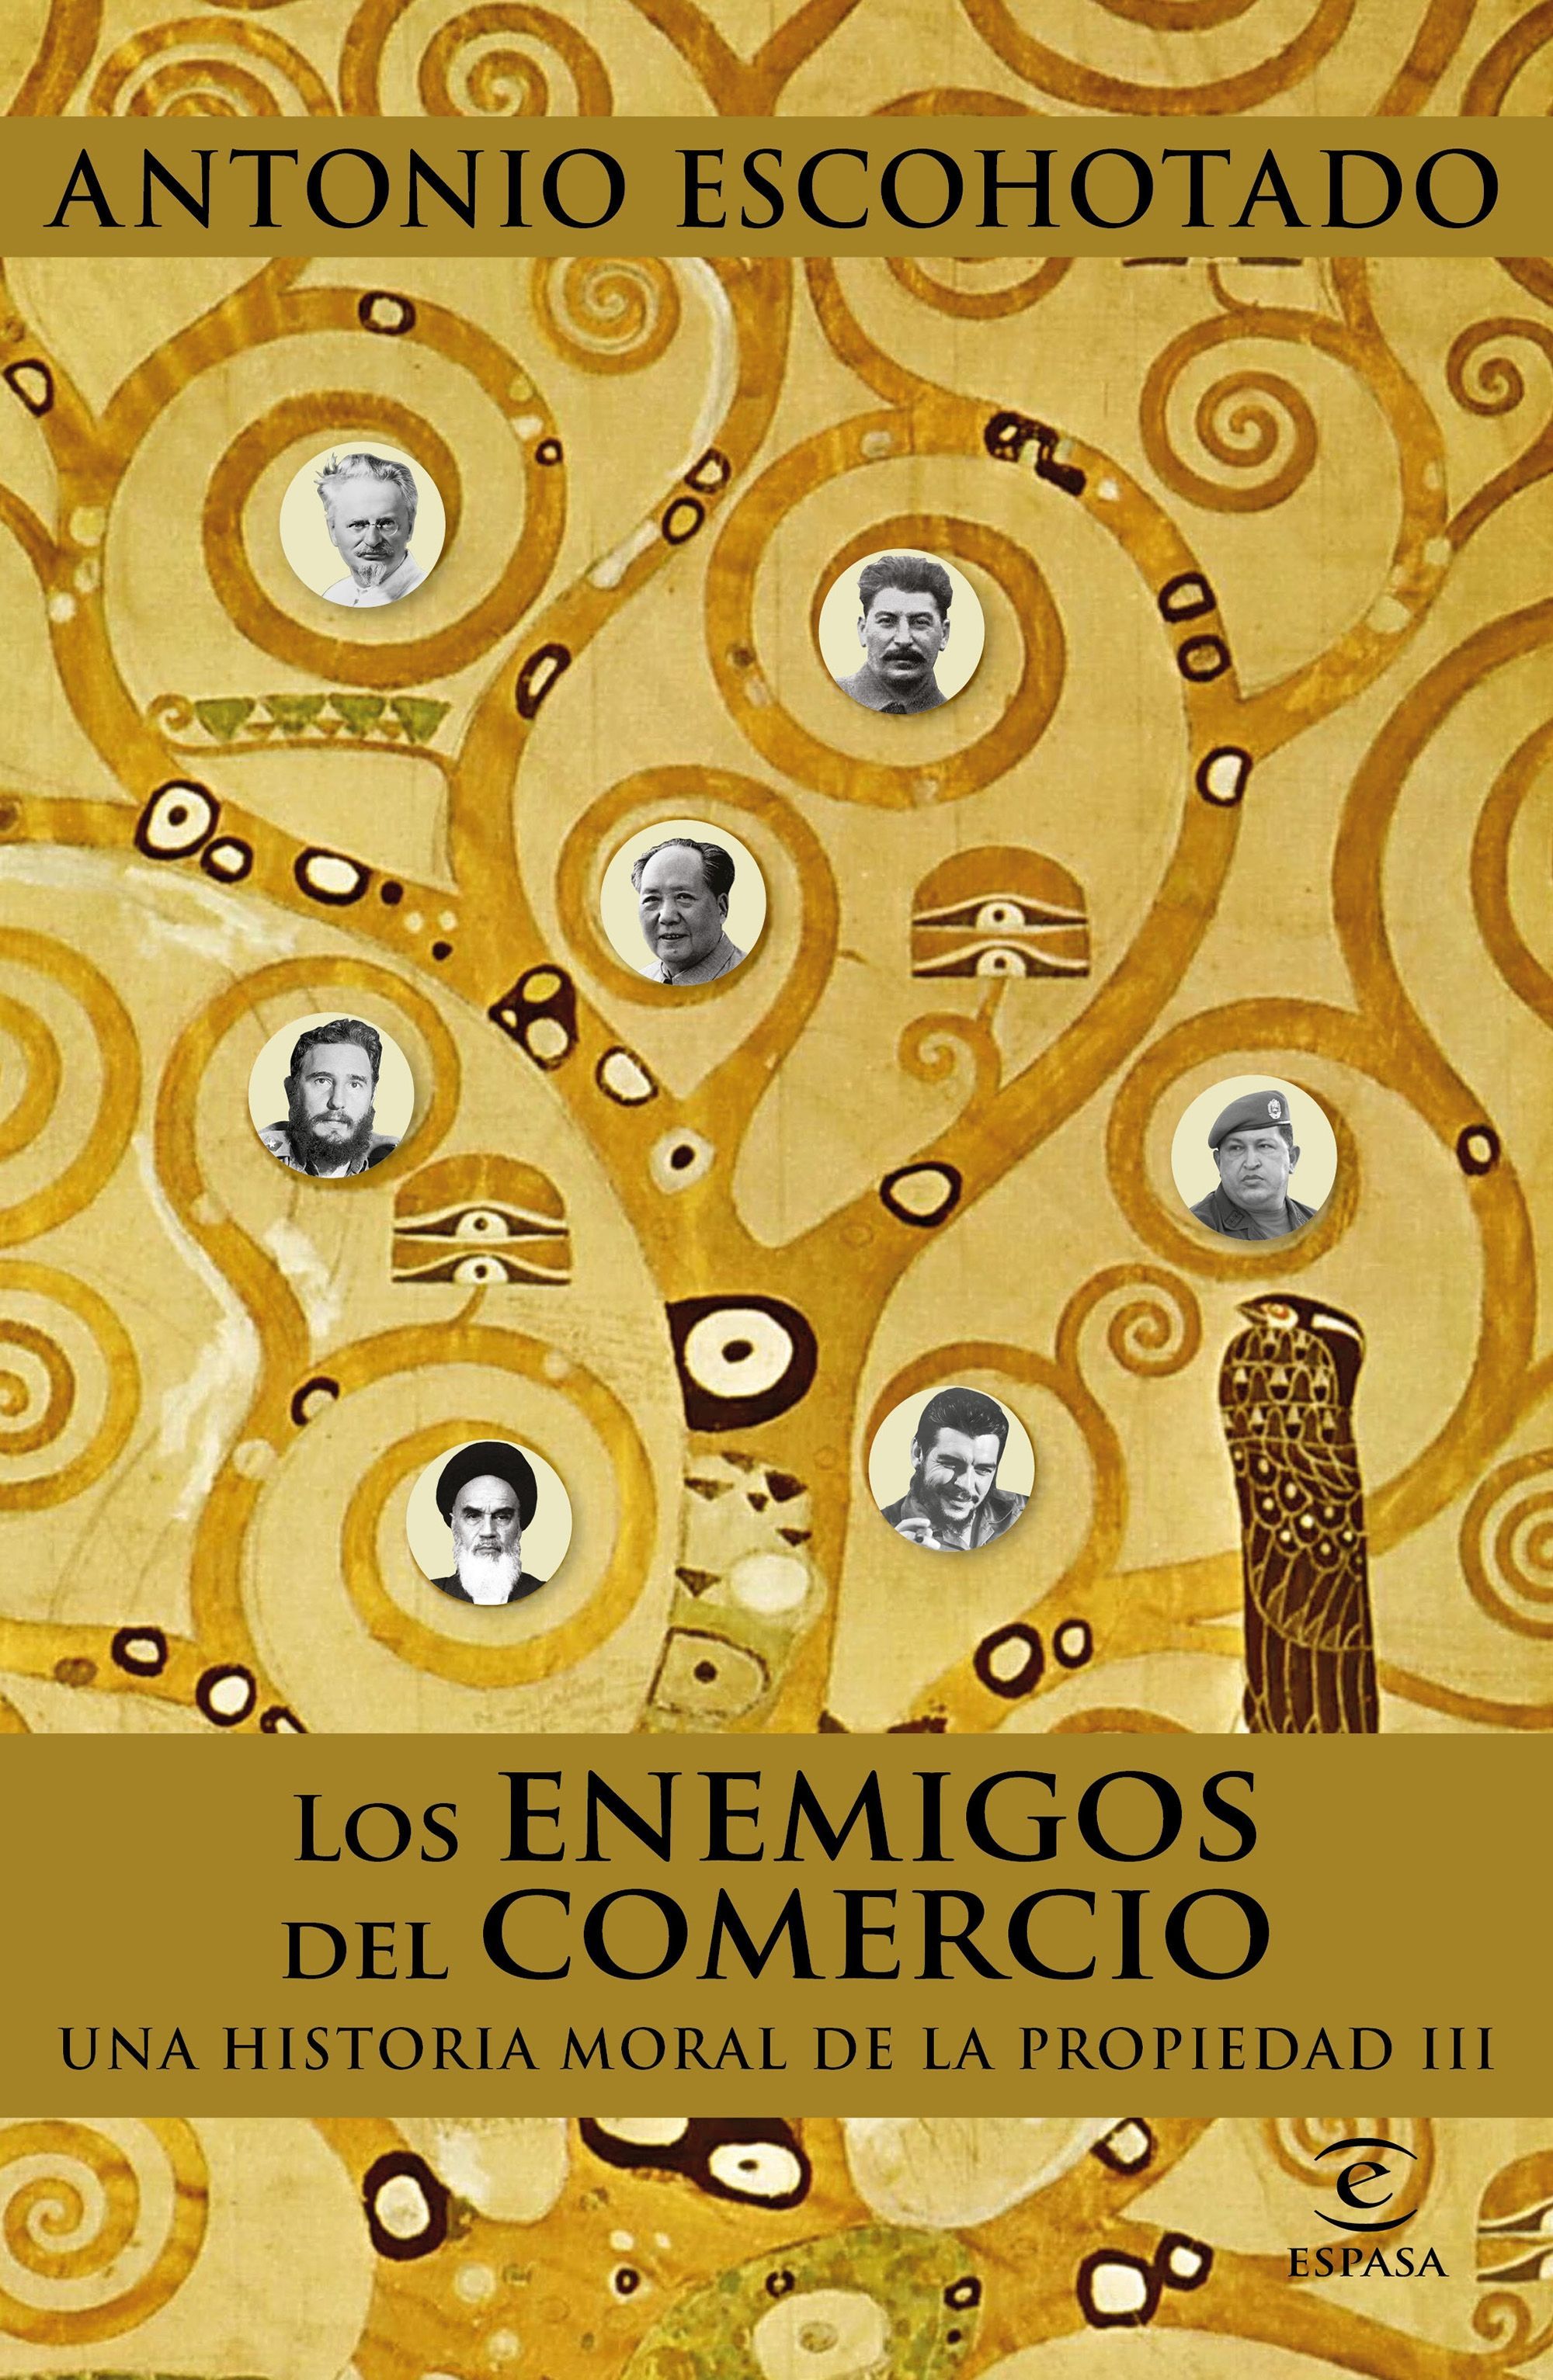 LOS ENEMIGOS DEL COMERCIO III. UNA HISTORIA MORAL DE LA PROPIEDAD III